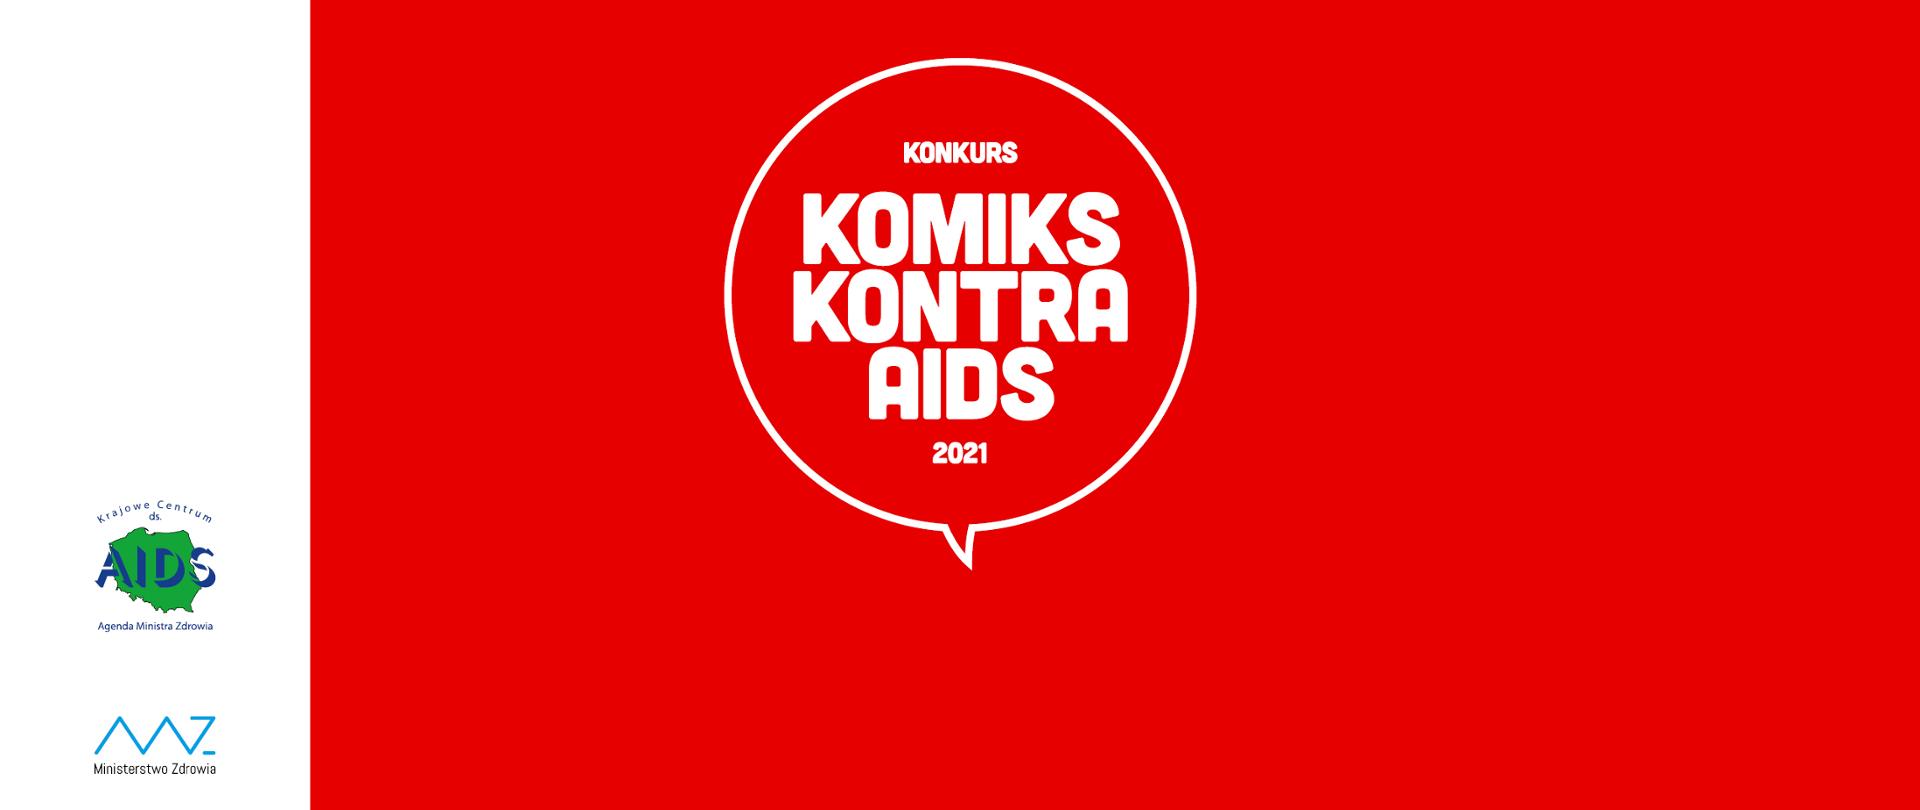 Grafika z tekstem: Konkurs Komiks Kontra AIDS 2021. Po lewej stronie logotypy Ministerstwa Zdrowia i Krajowego Centrum ds. AIDS